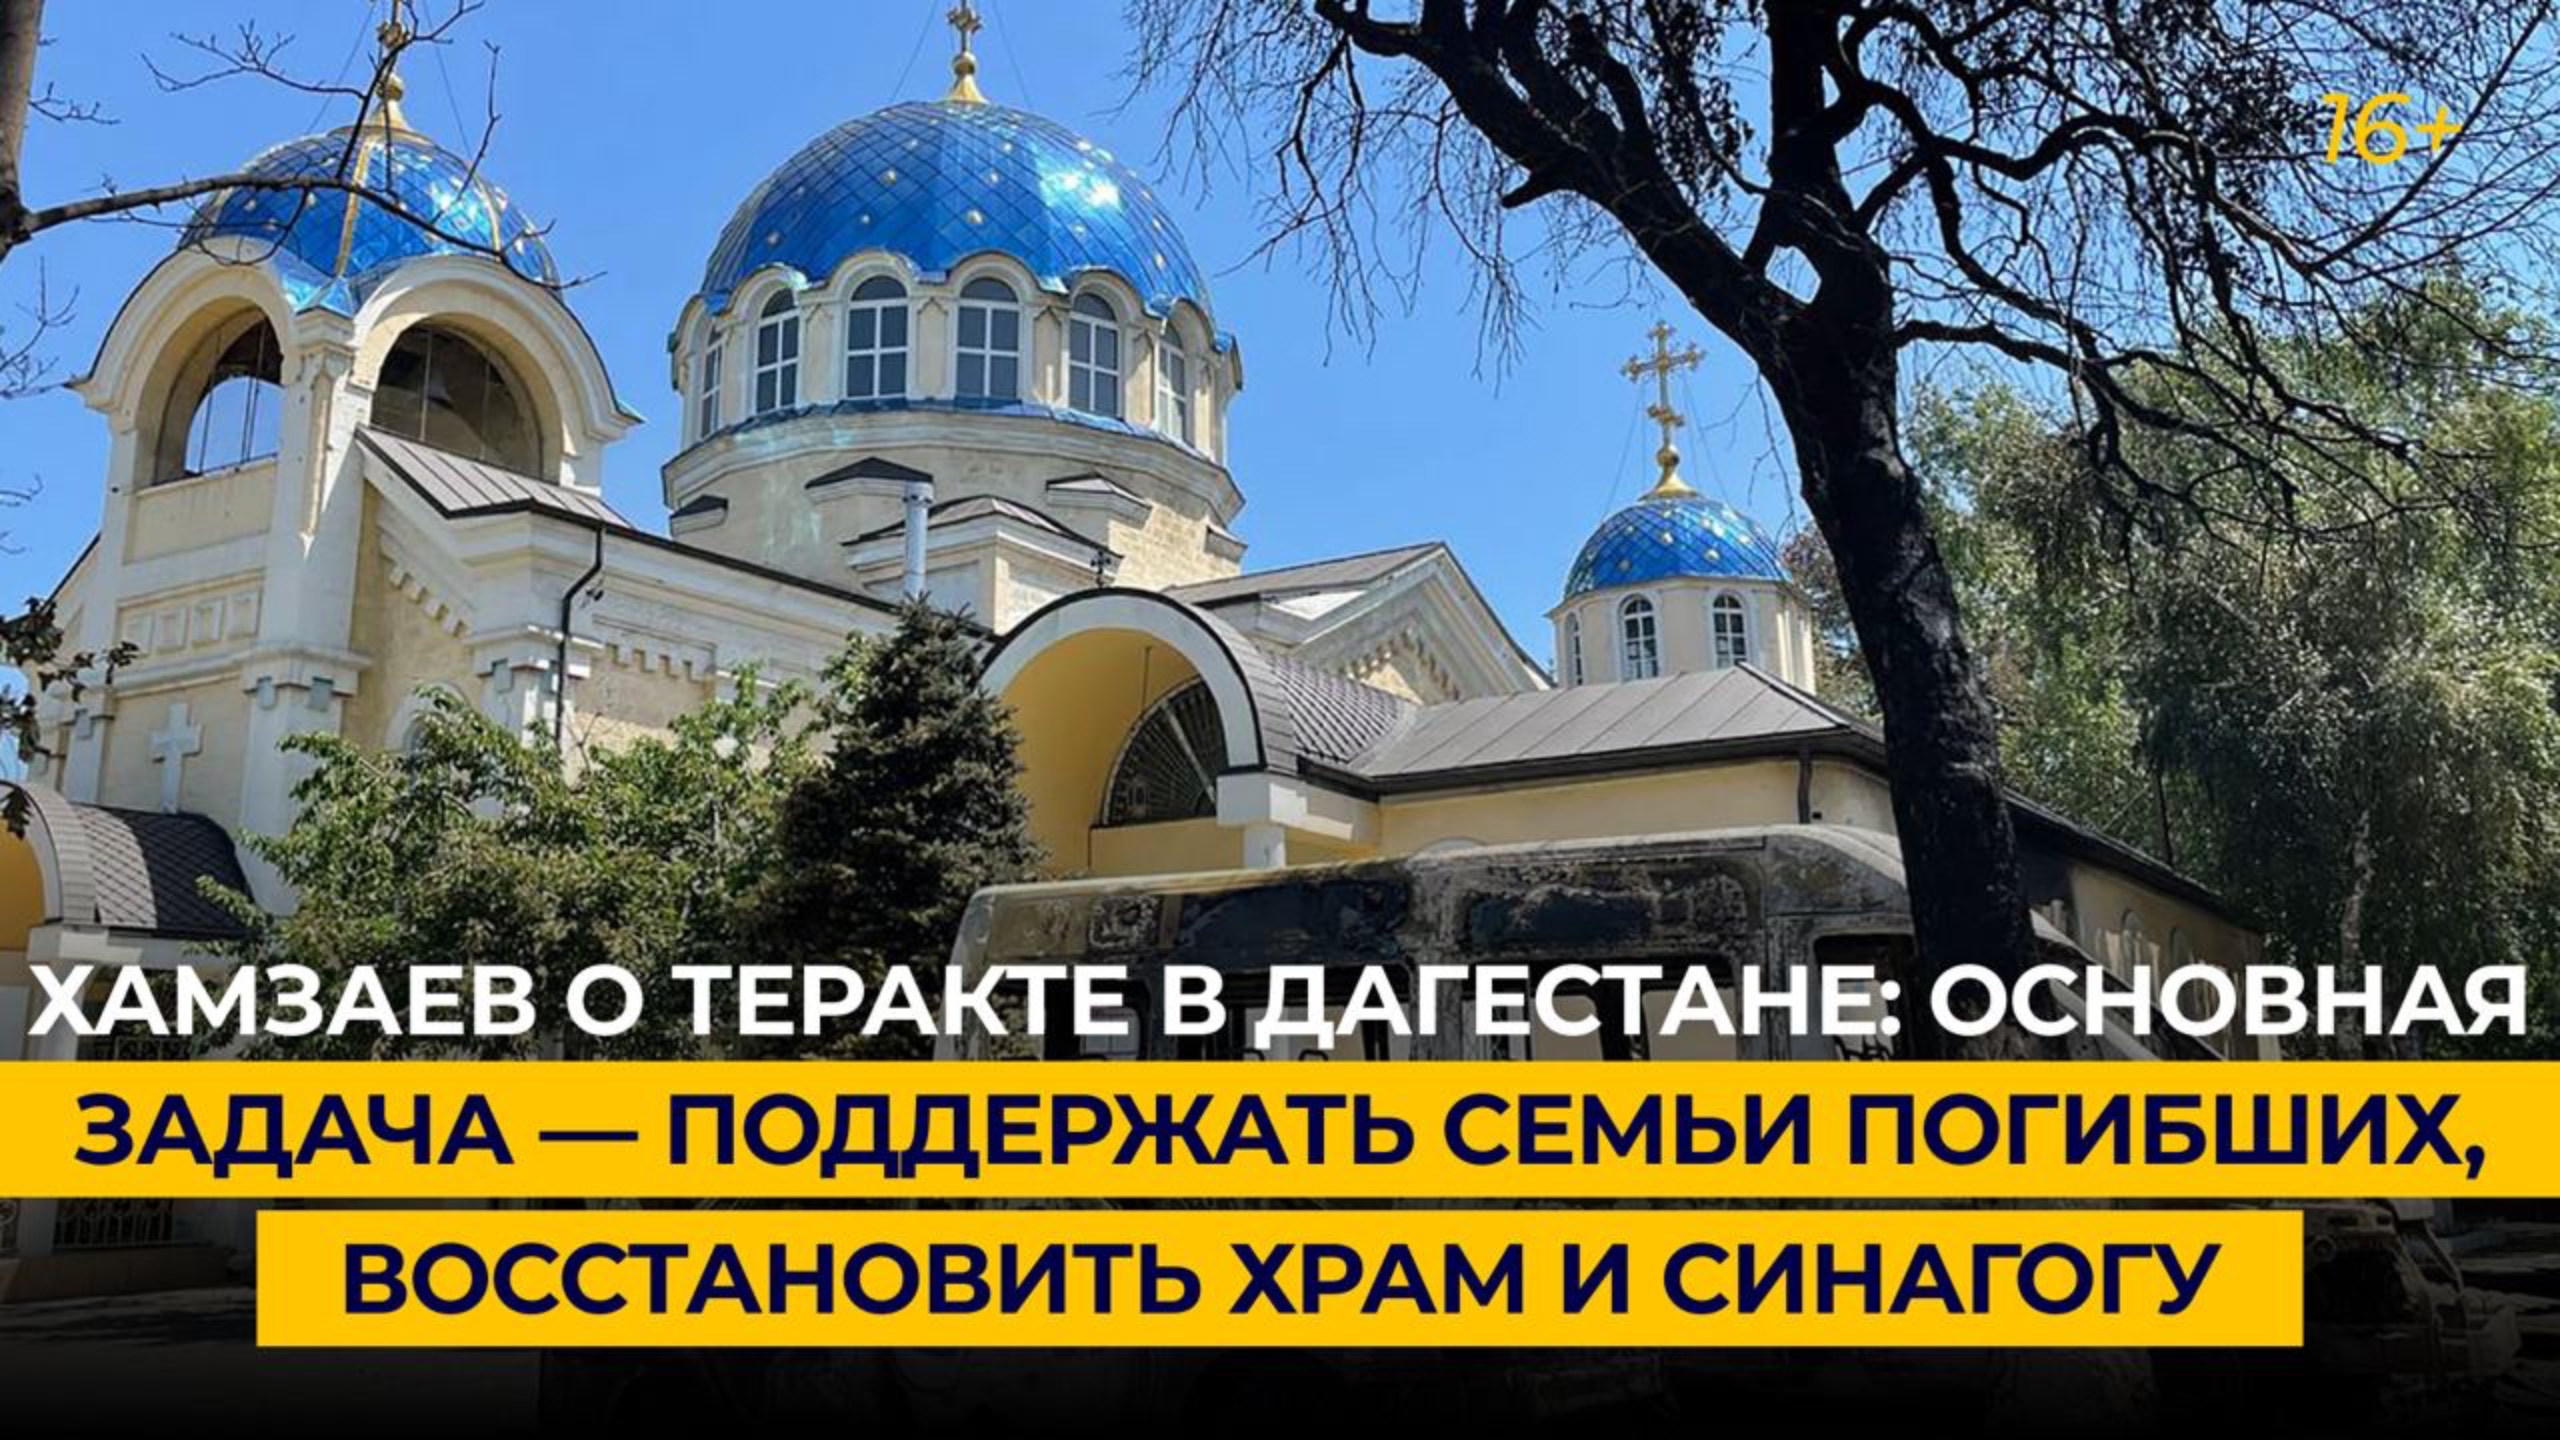 Хамзаев о теракте в Дагестане: задача — поддержать семьи погибших, восстановить храм и синагогу